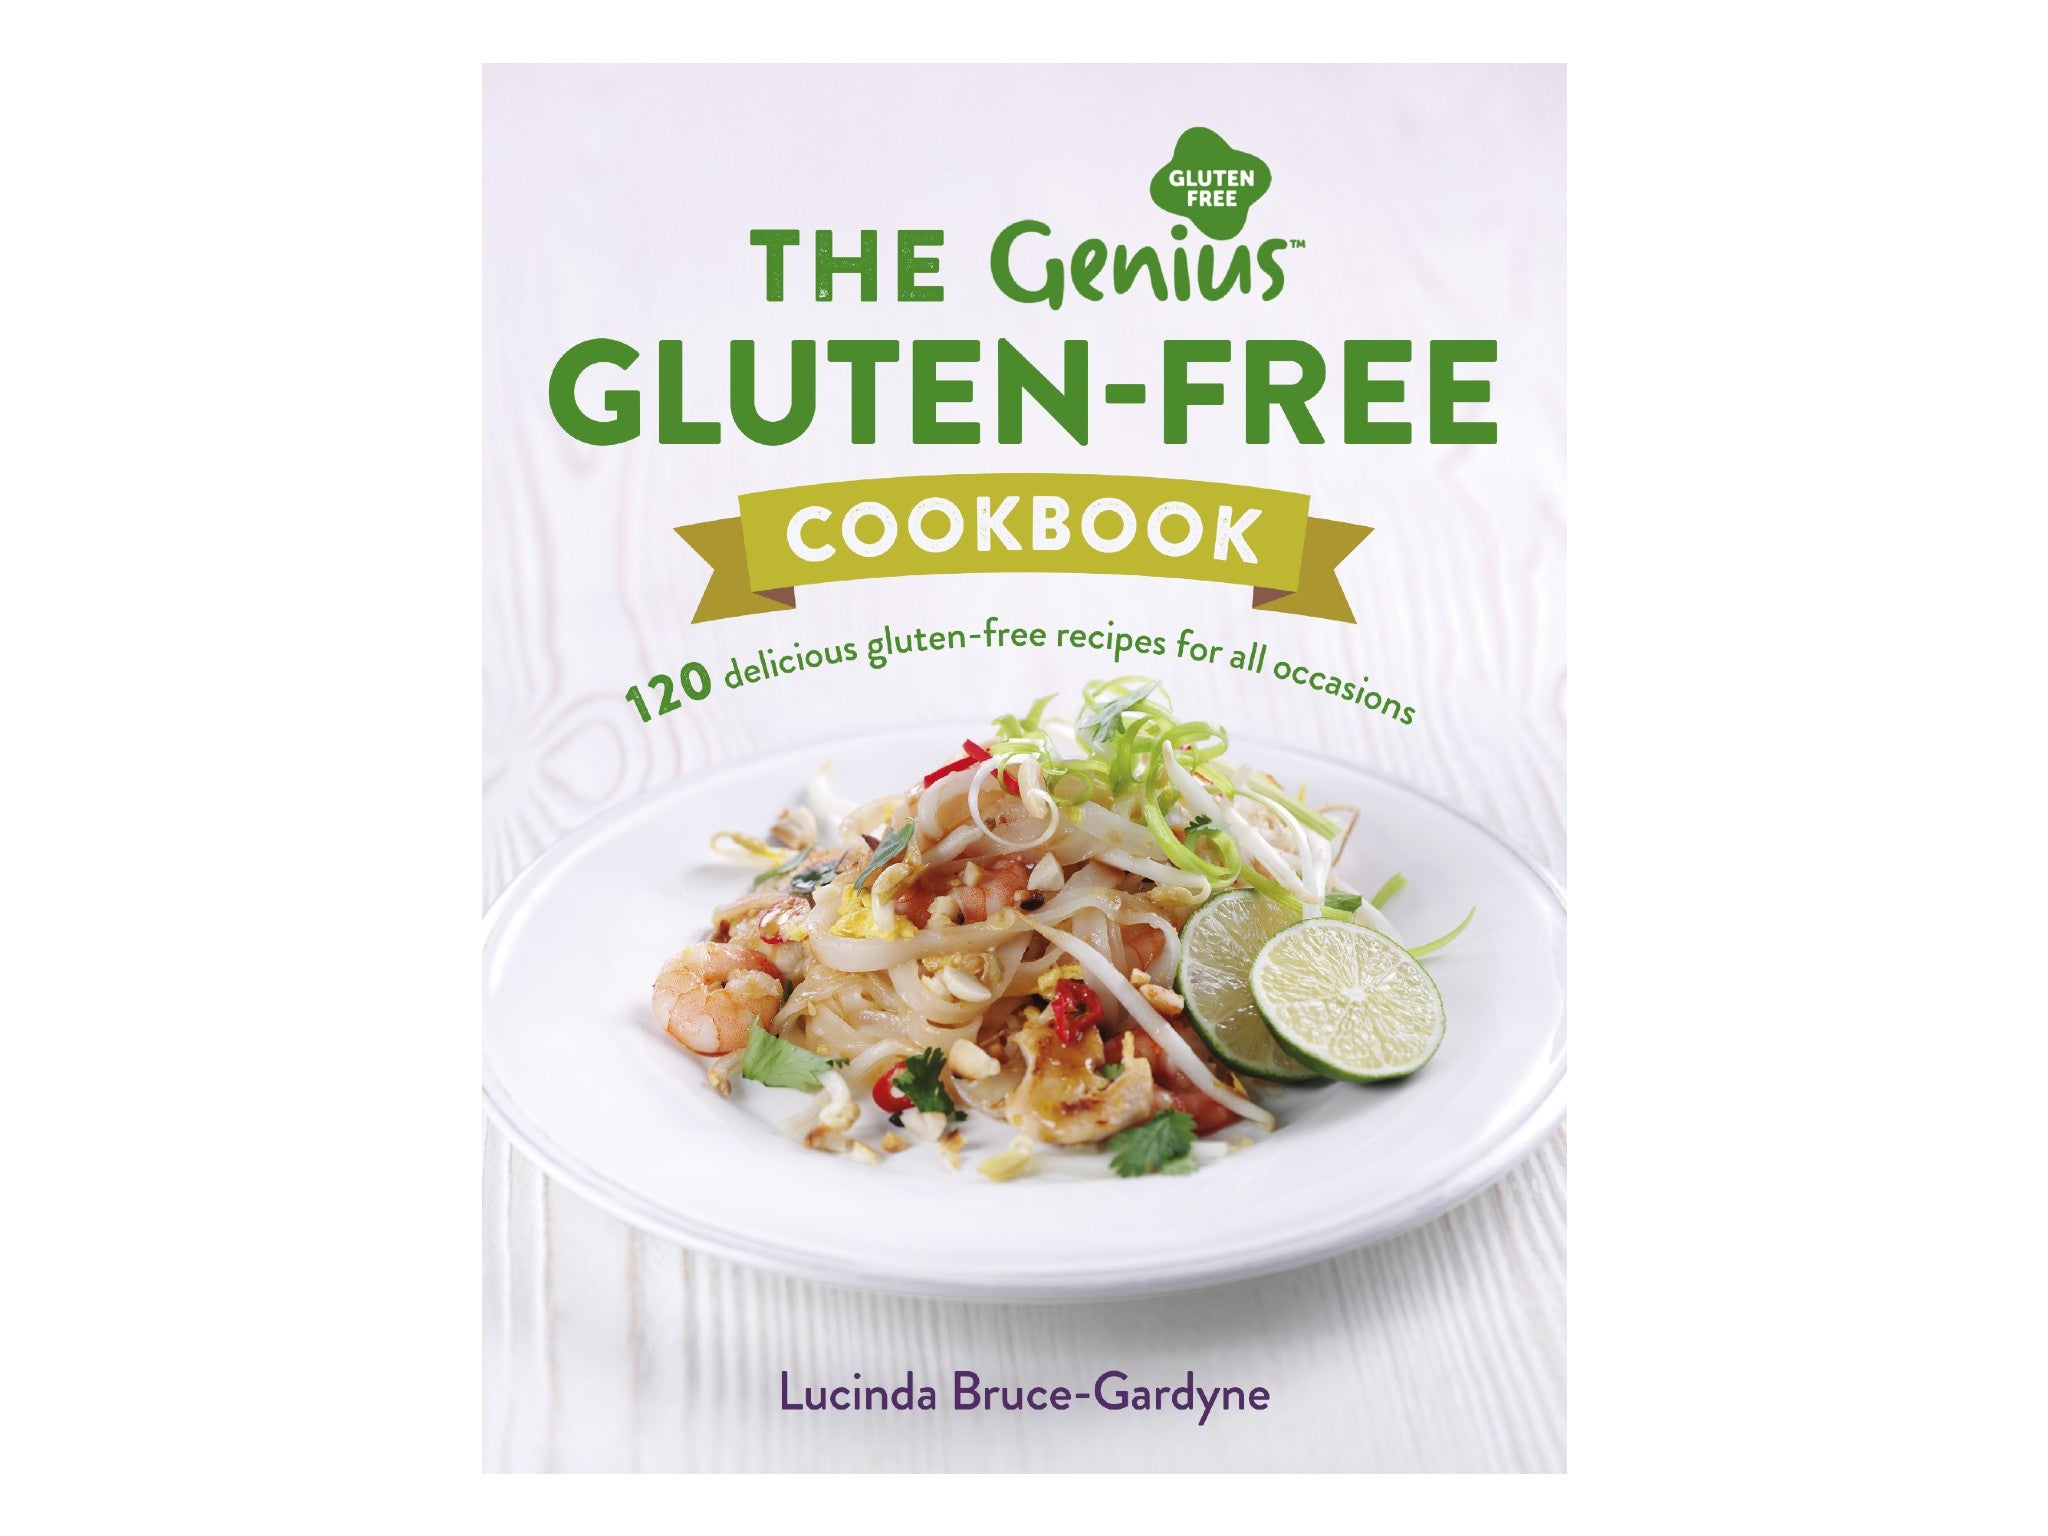 ‘The Genius Gluten-Free Cookbook’ by Lucinda Bruce-Gardyne indybest.jpeg